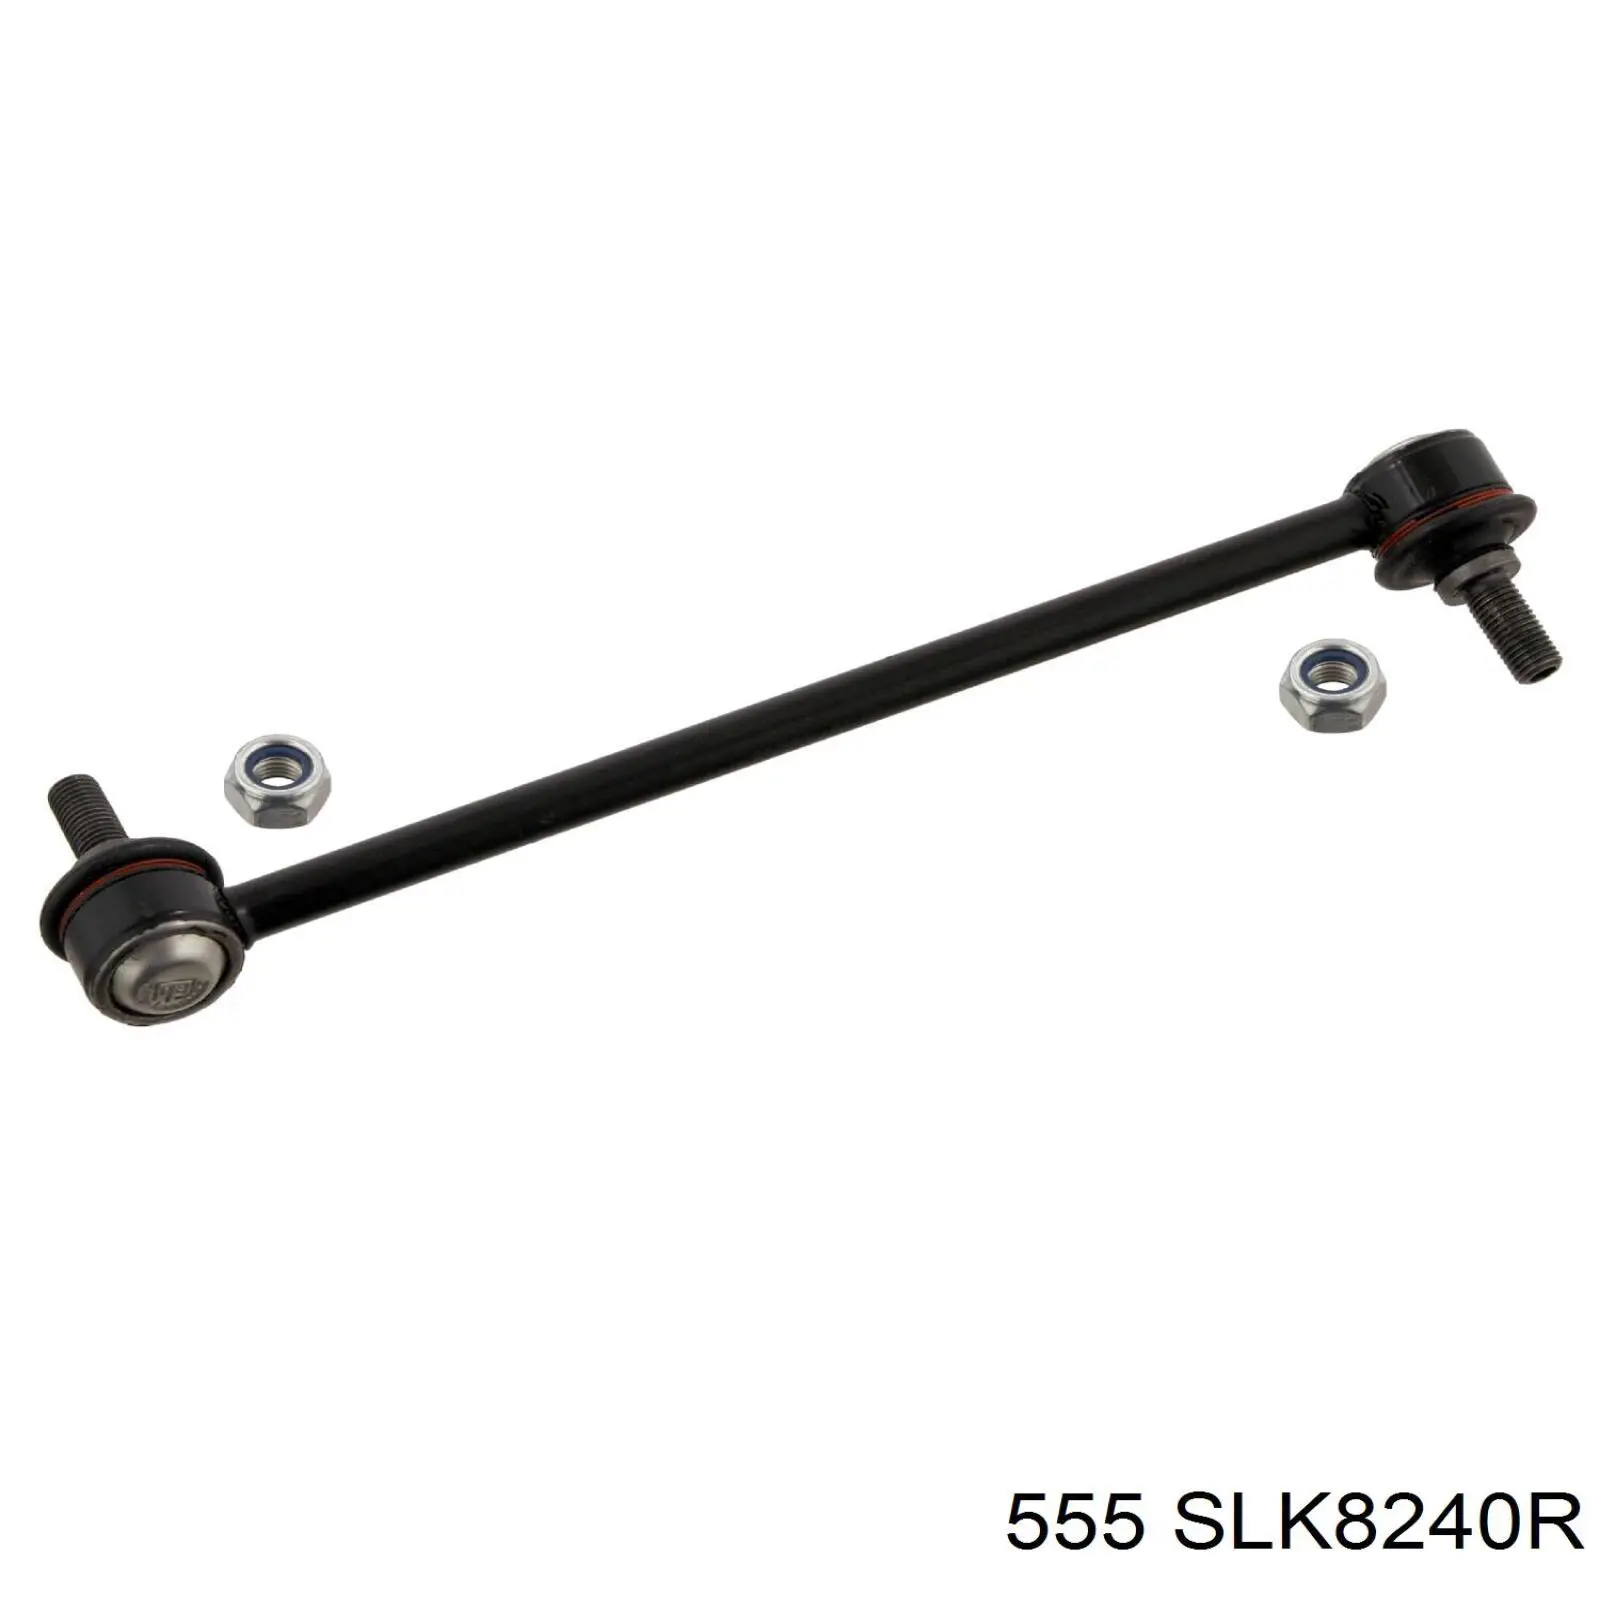 SLK8240R 555 barra estabilizadora delantera derecha